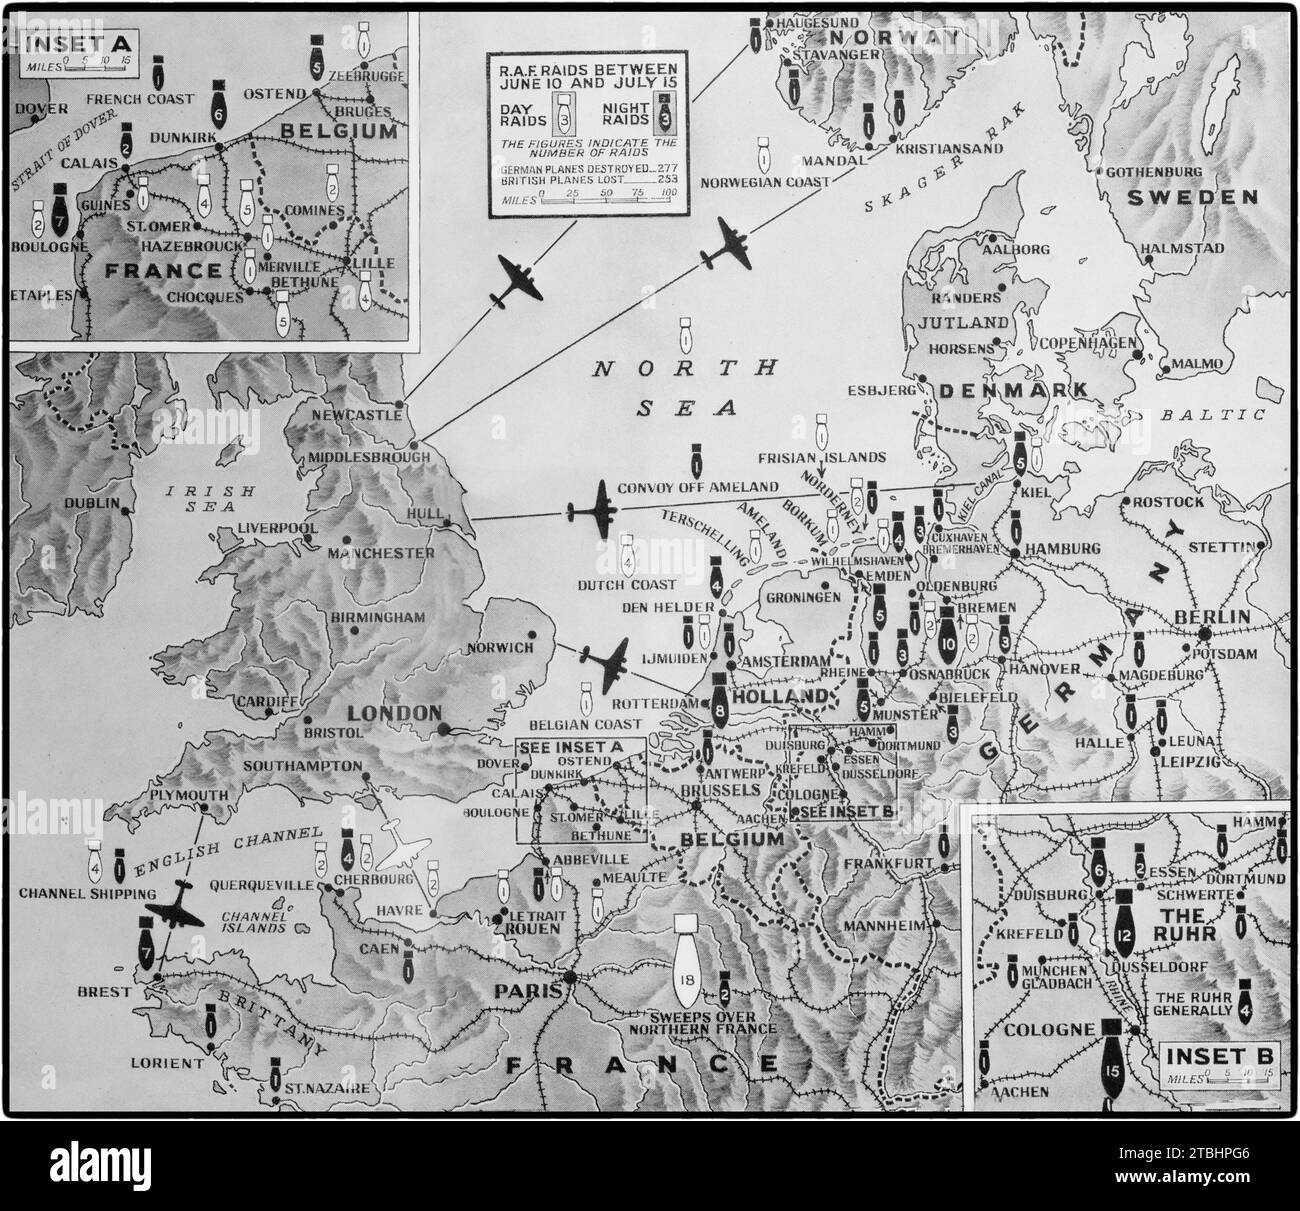 Eine Karte, die Großbritanniens Luftoffensive des Zweiten Weltkriegs gegen Deutschland und die besetzten Länder zwischen dem 10. Juni und dem 15. Juli 1941 zeigt. Es gab 76 Überfälle bei Tageslicht (weißes Bombensymbol) und 154 nächtliche Überfälle (schwarzes Bombensymbol) mit der Anzahl der Angriffe auf jede Bombe, wobei die Karte die Hauptziele anzeigt. Stockfoto